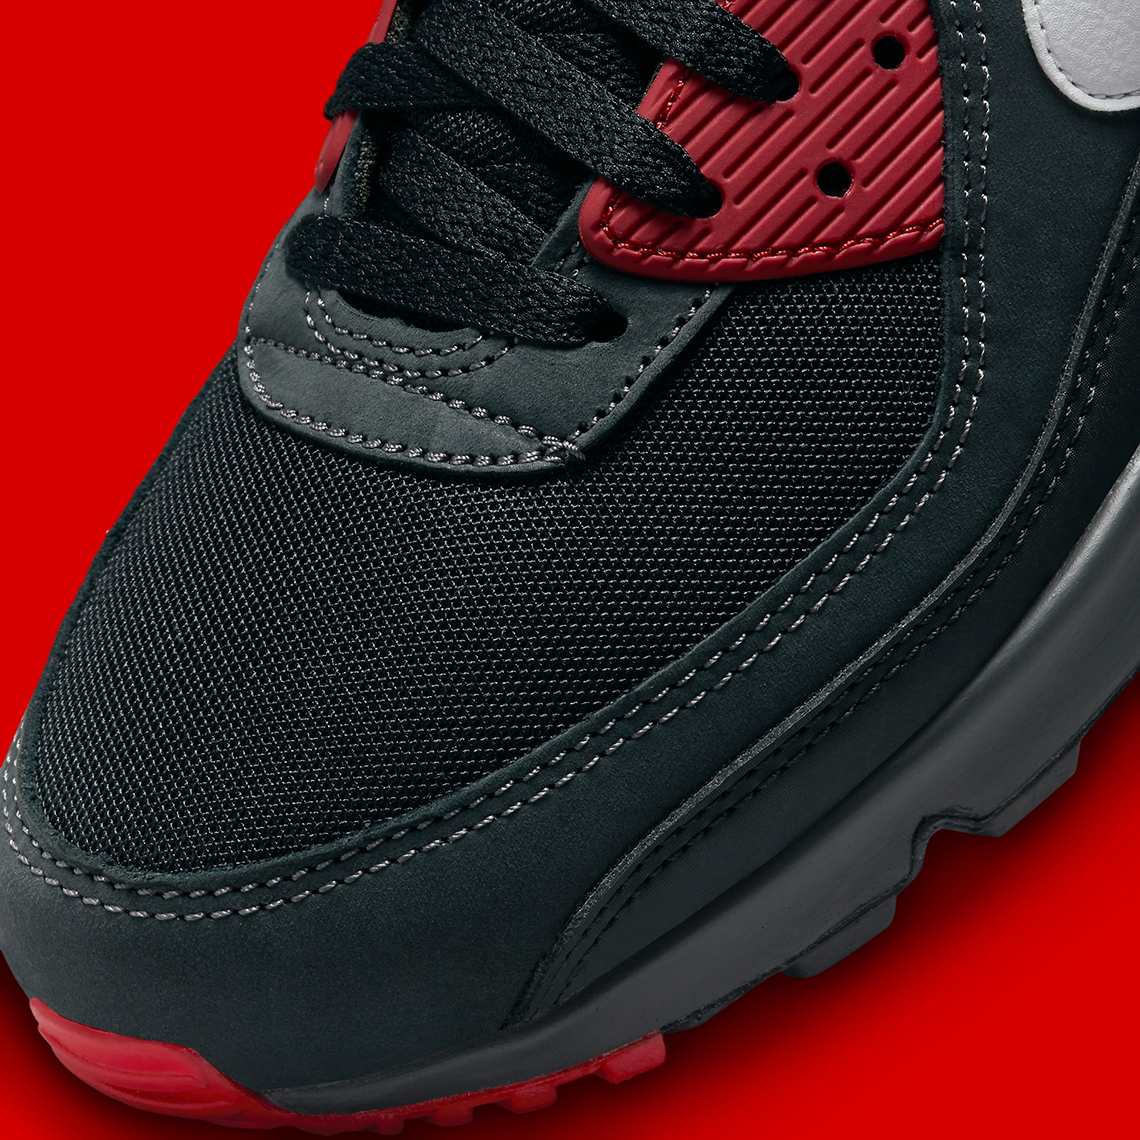 Nike Air Max 90 Black Red FB9658-001 | SneakerNews.com